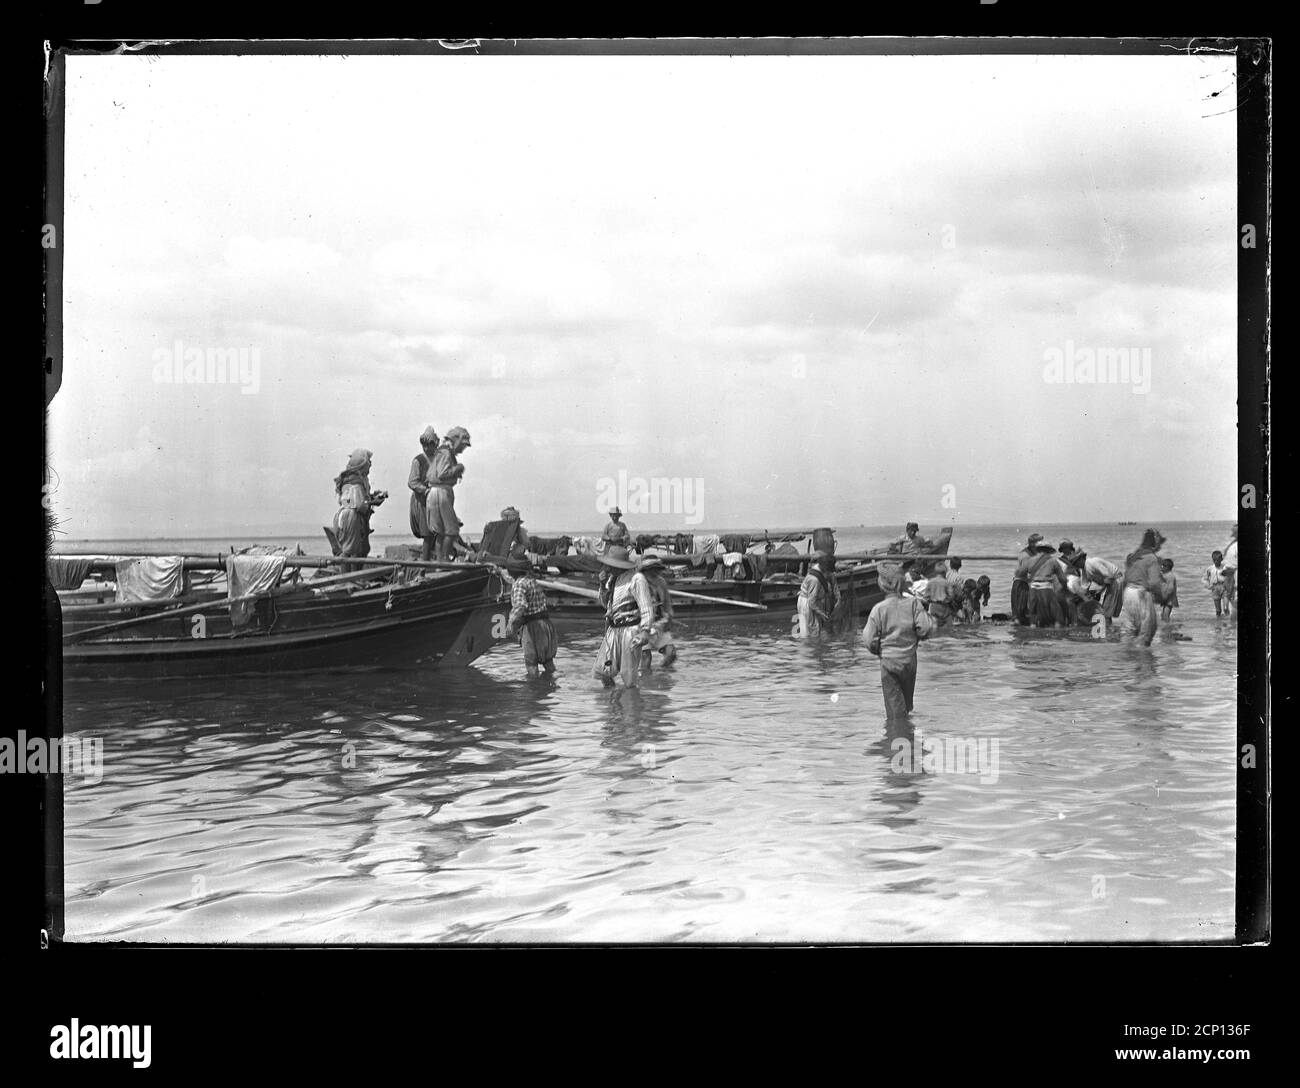 I pescatori turchi mantengono il loro equiment per il prossimo viaggio di pesca. Turchia, presumibilmente vicino a Smirne (Smyrna). Fotografia su lastra di vetro asciutta della collezione Herry W. Schaefer, intorno al 1913. Foto Stock